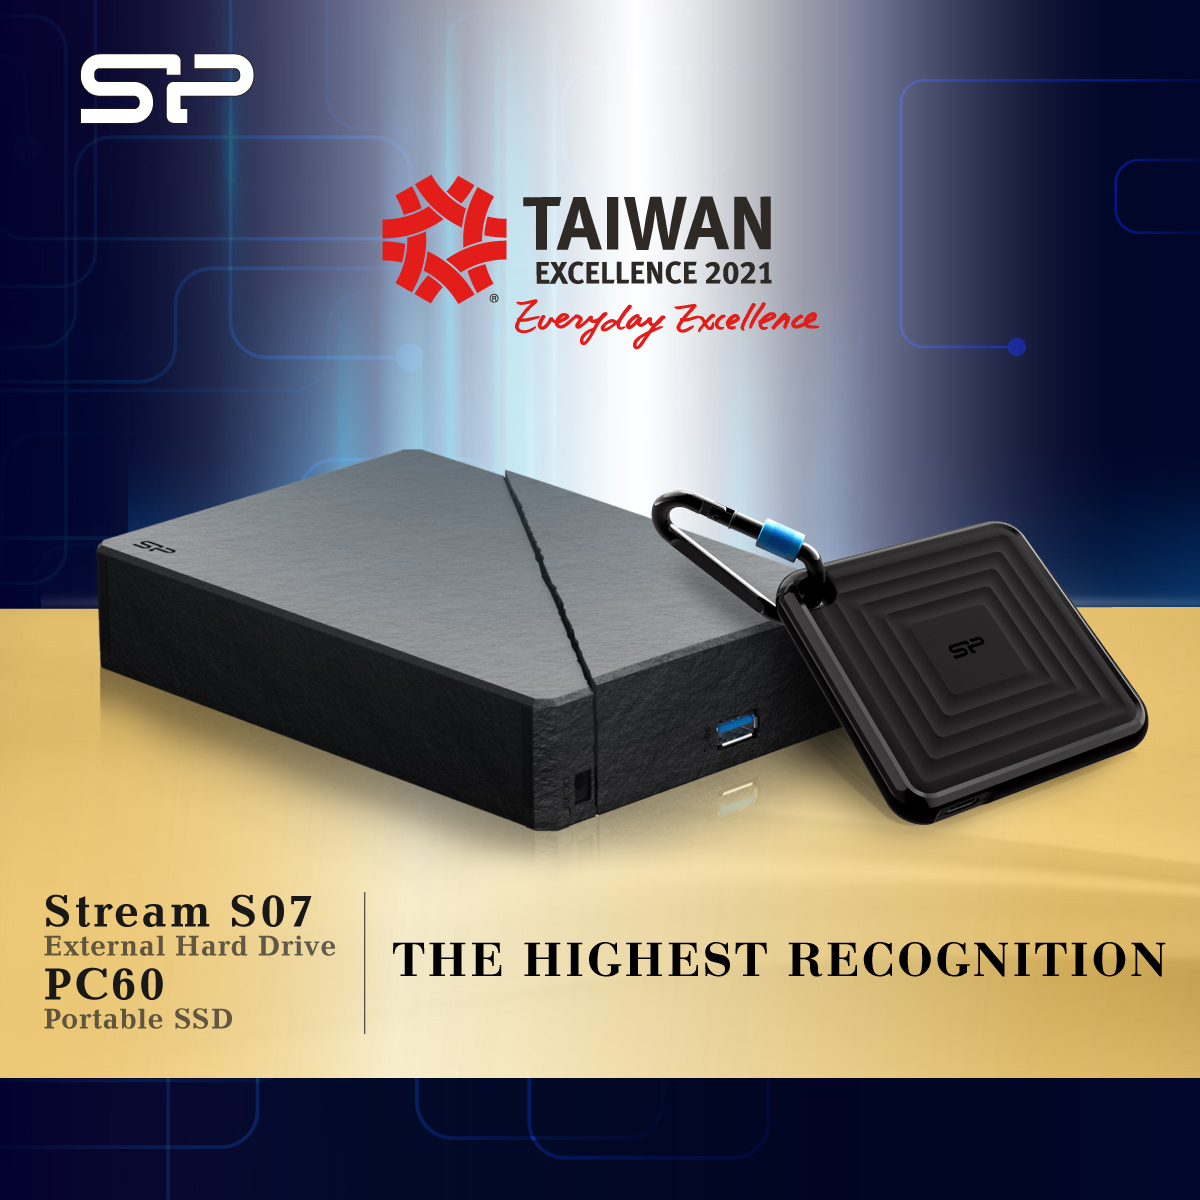 La SSD Portátil PC60 y disco duro externo SO7 de Silicon Power han sido premiadas con el premio a la Excelencia de Taiwán.